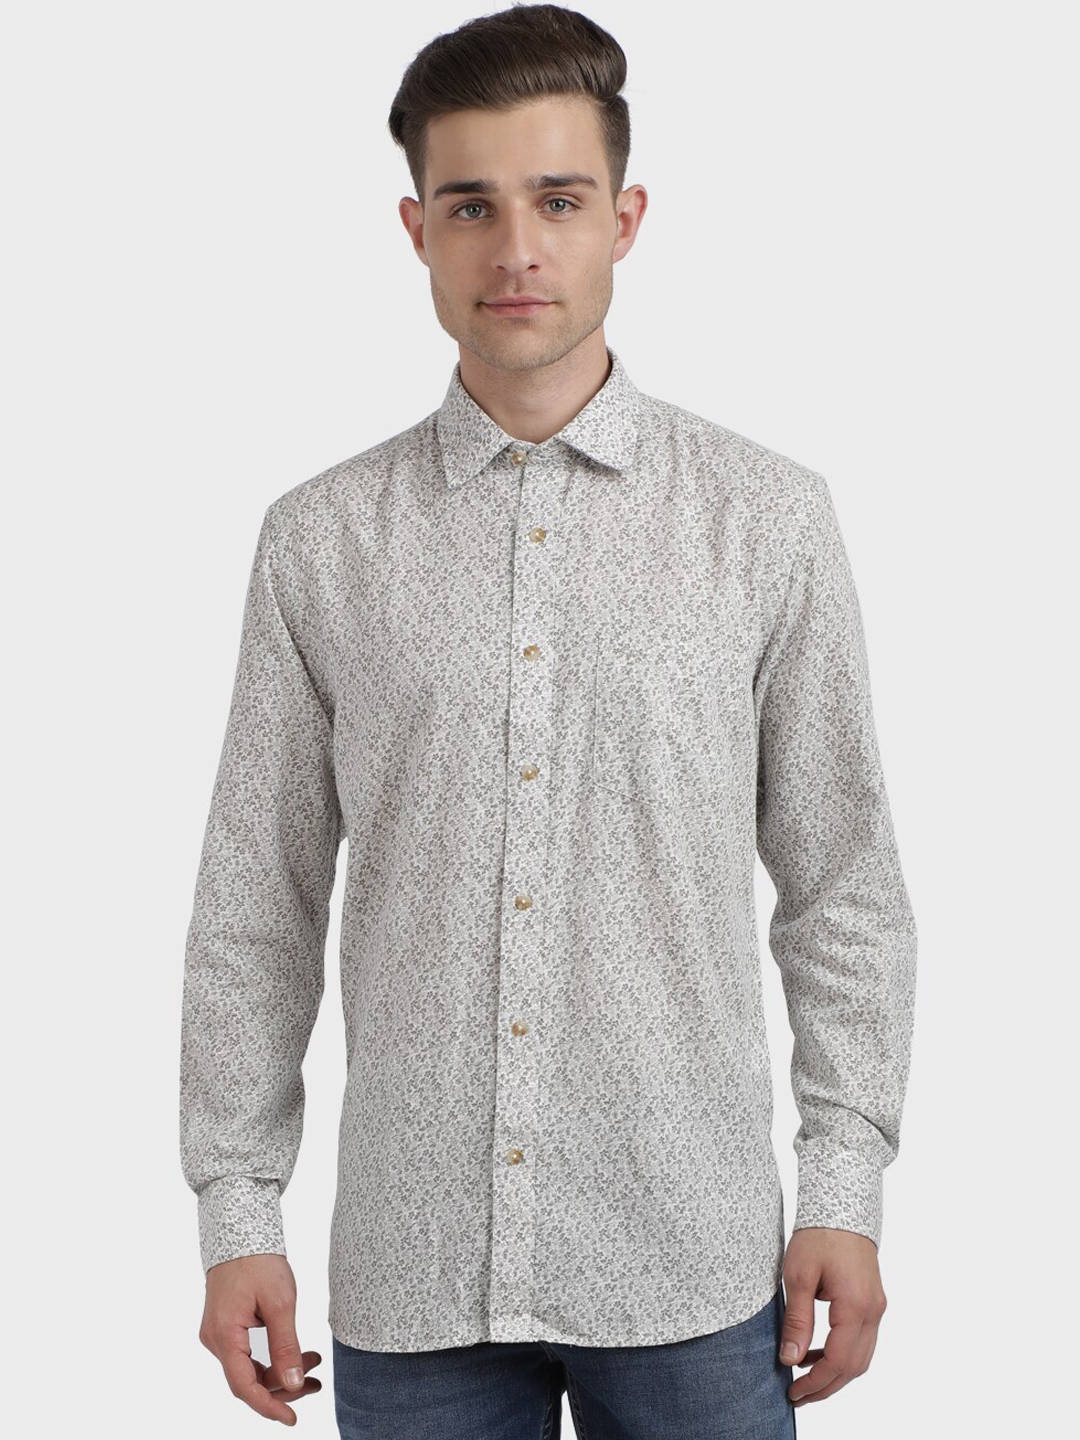 Buy ColorPlus Men White & Grey Regular Fit Printed Casual Shirt ...